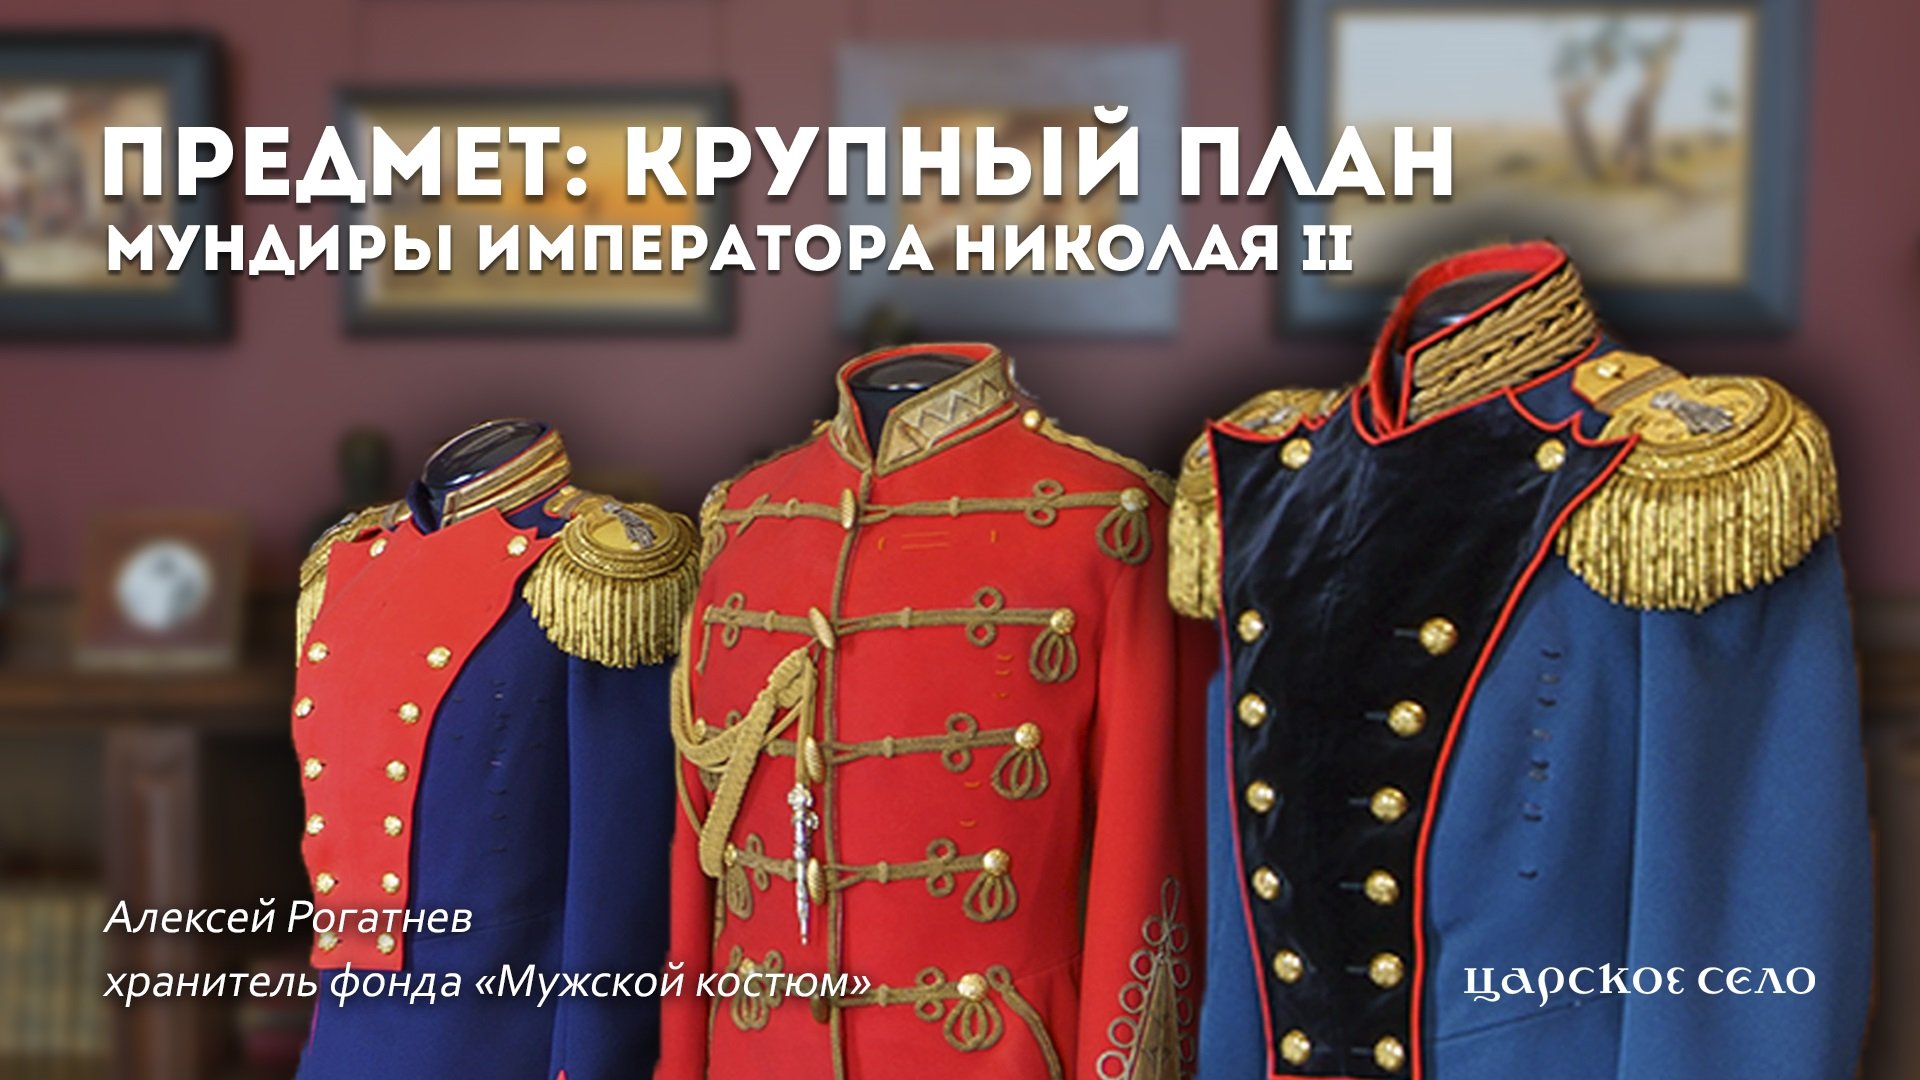 Мундиры императора Николая II | Предмет: крупный план